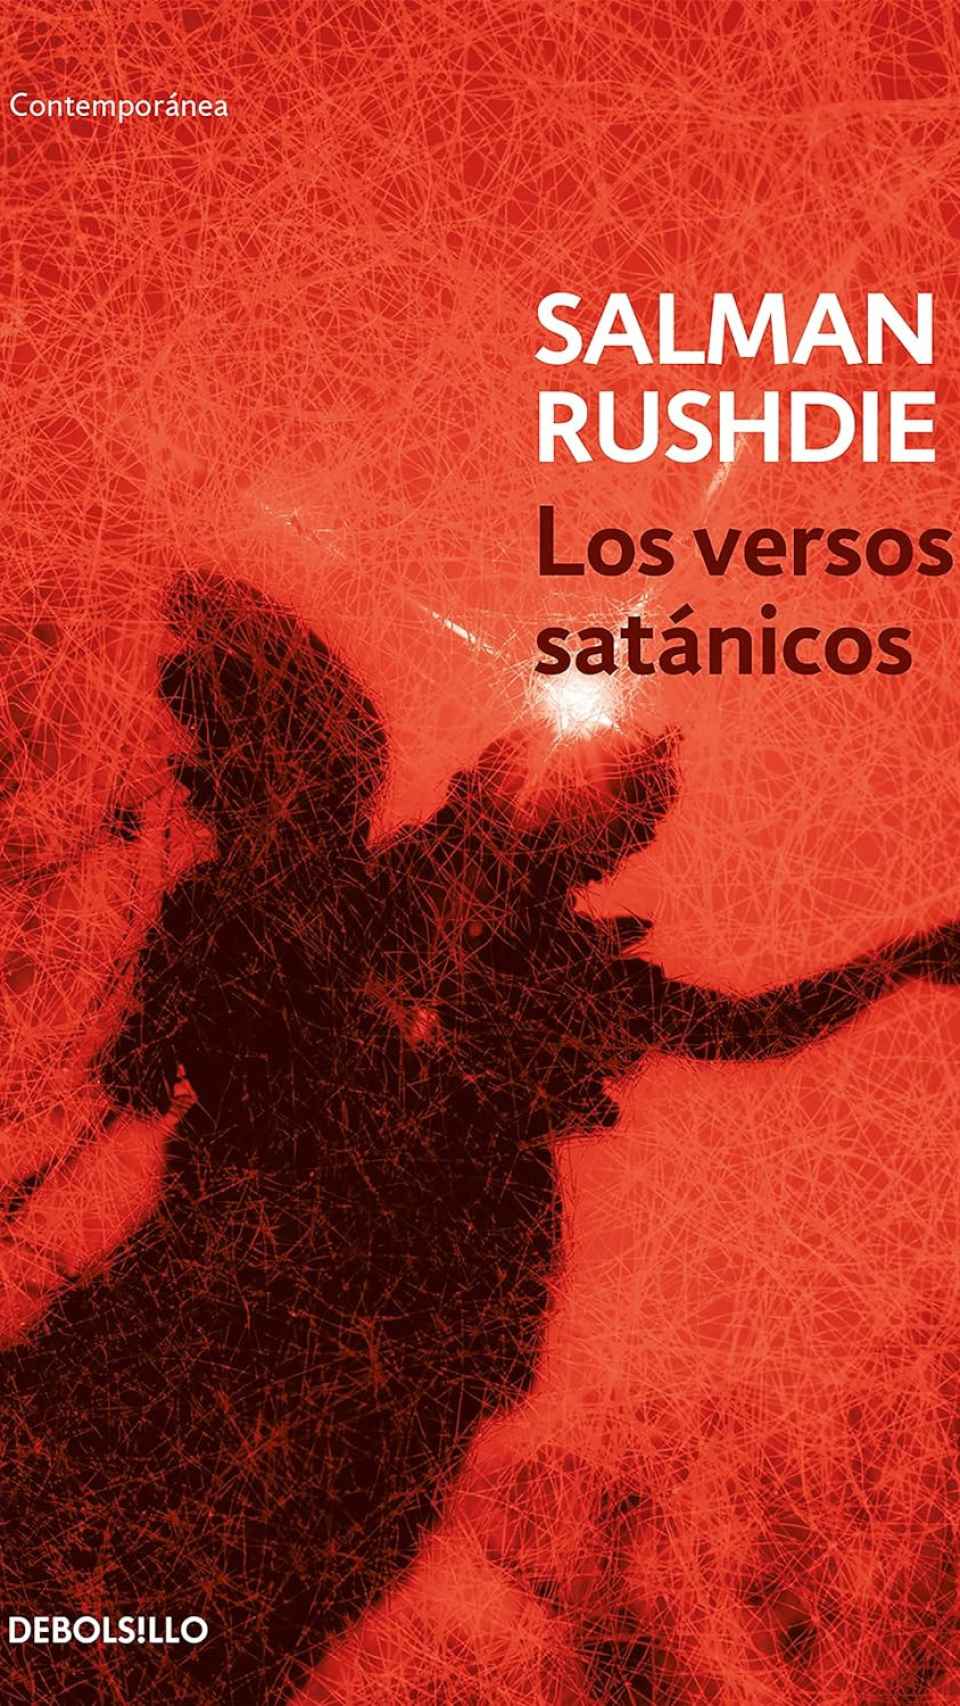 'Los versos satánicos' de Salman Rushdie